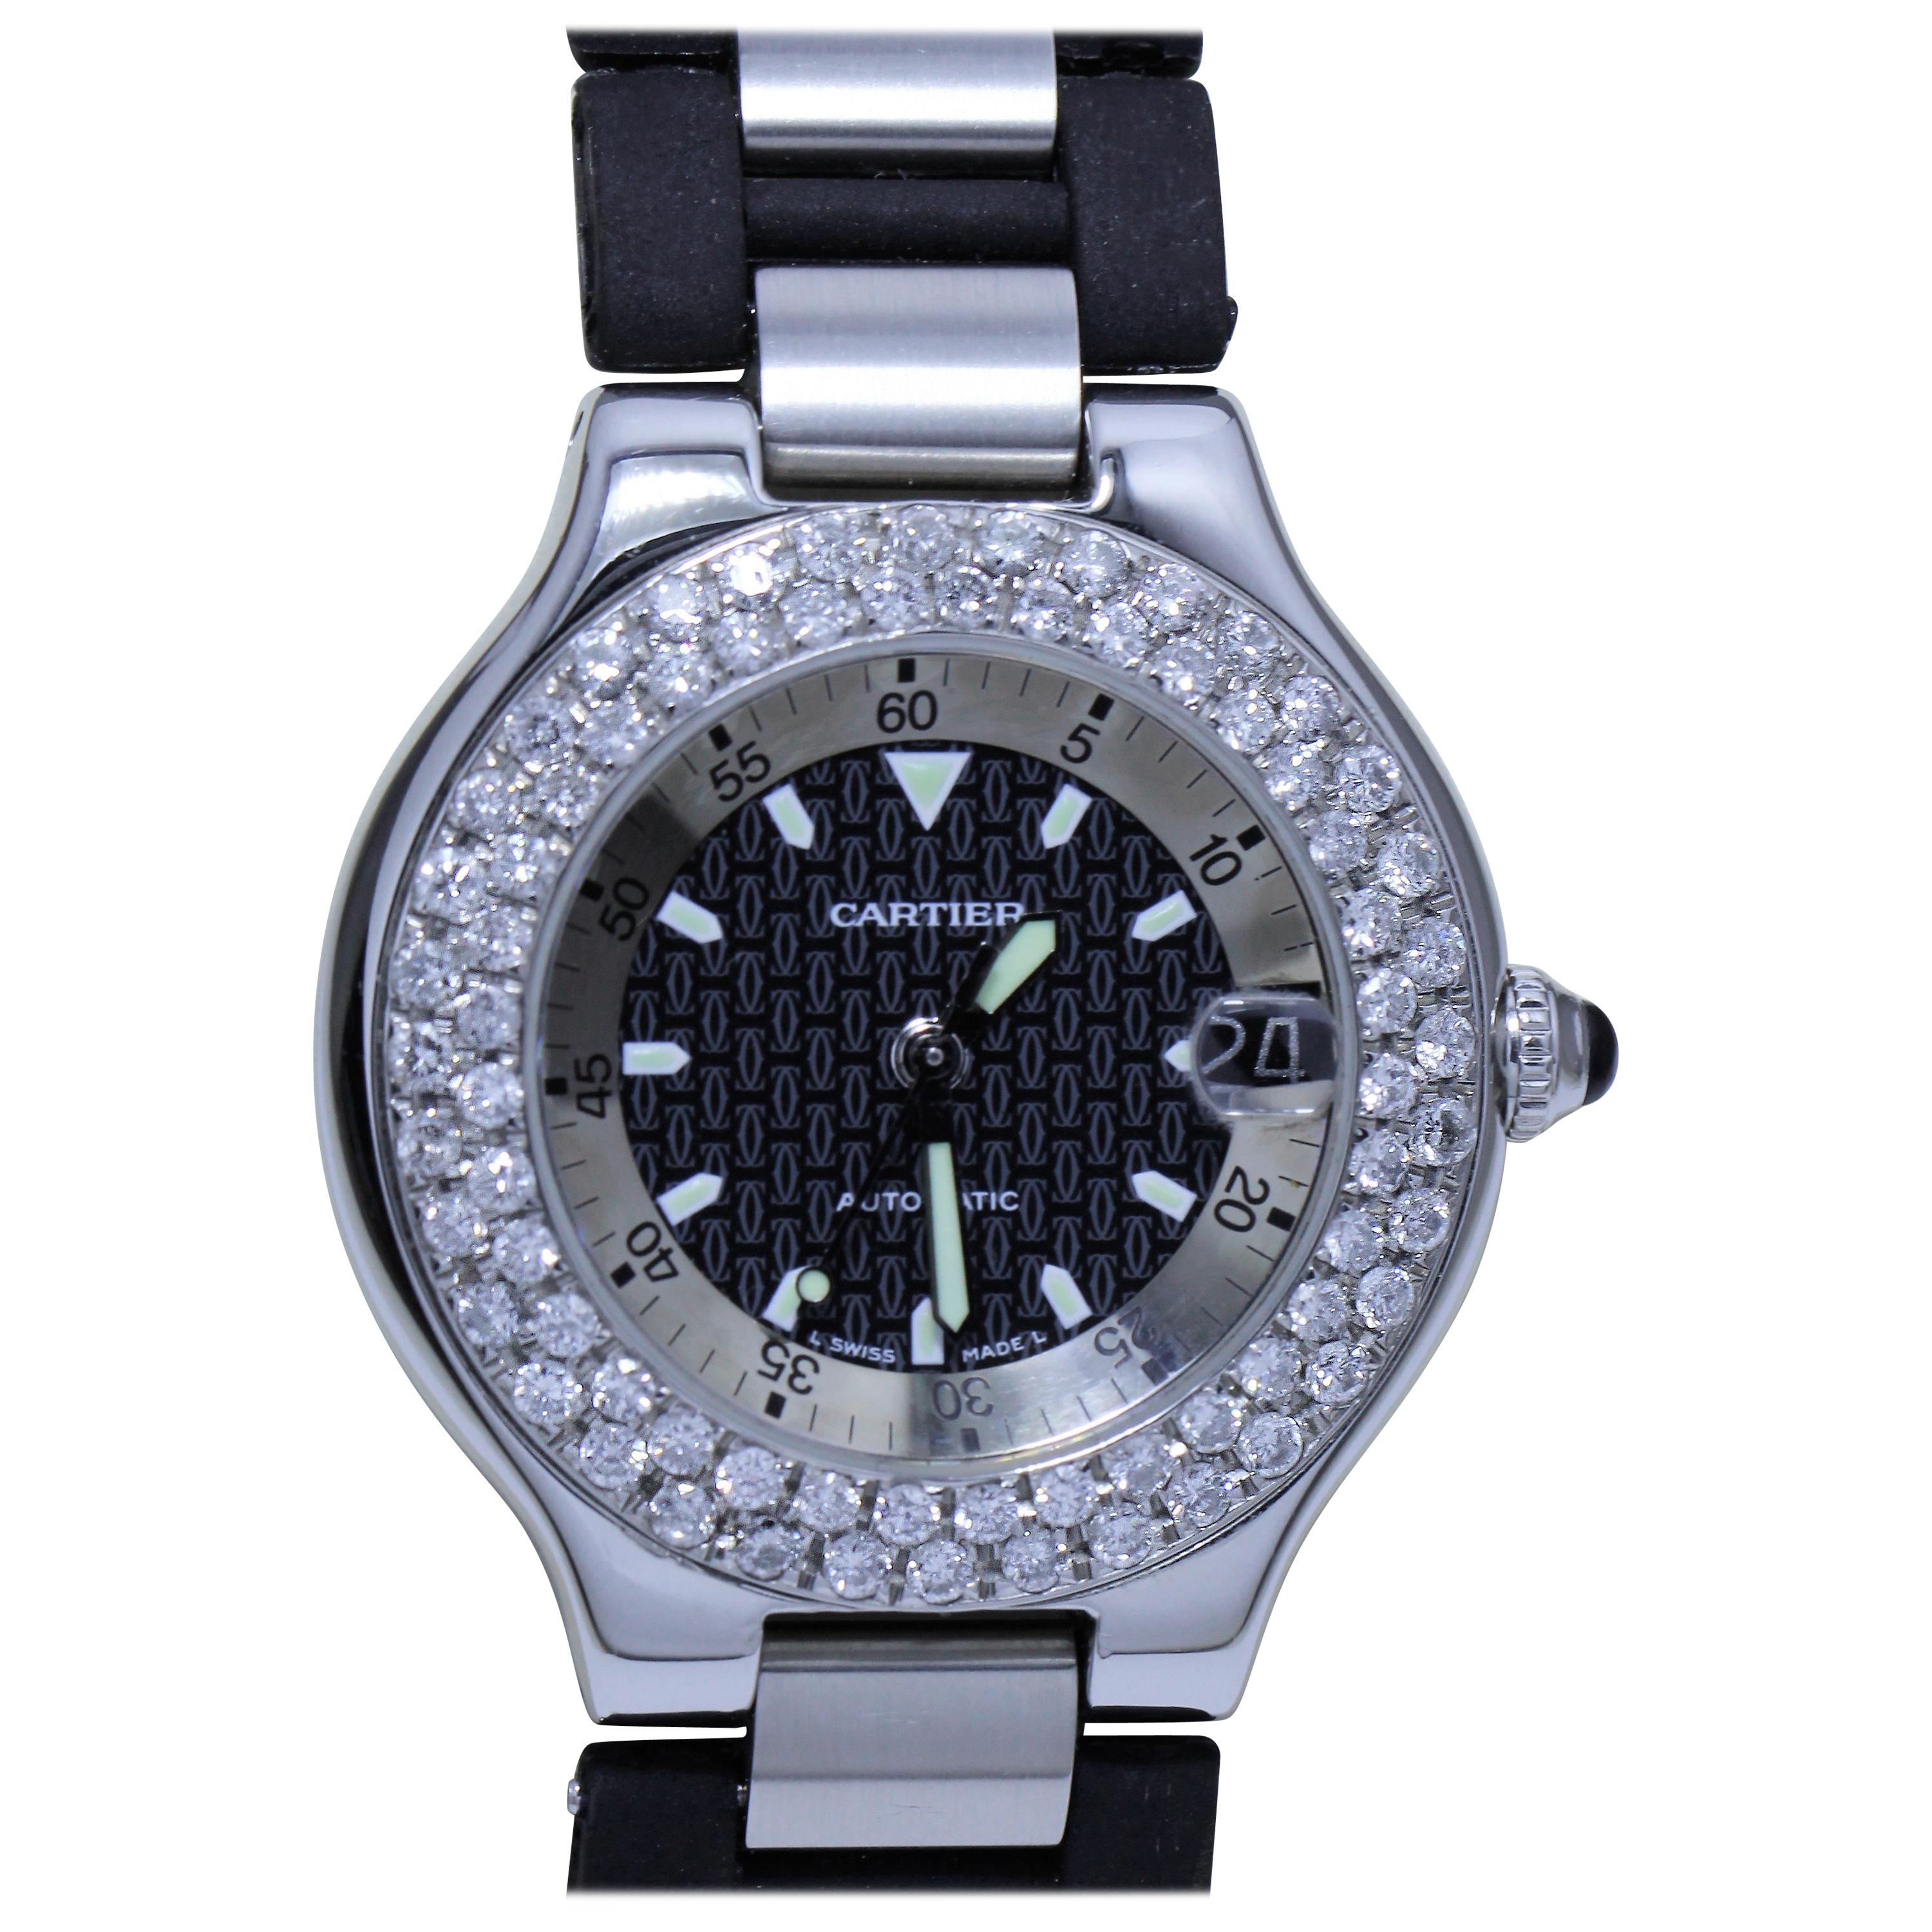 Cartier C90M Automatic Wristwatch with Diamond Studded Bezel